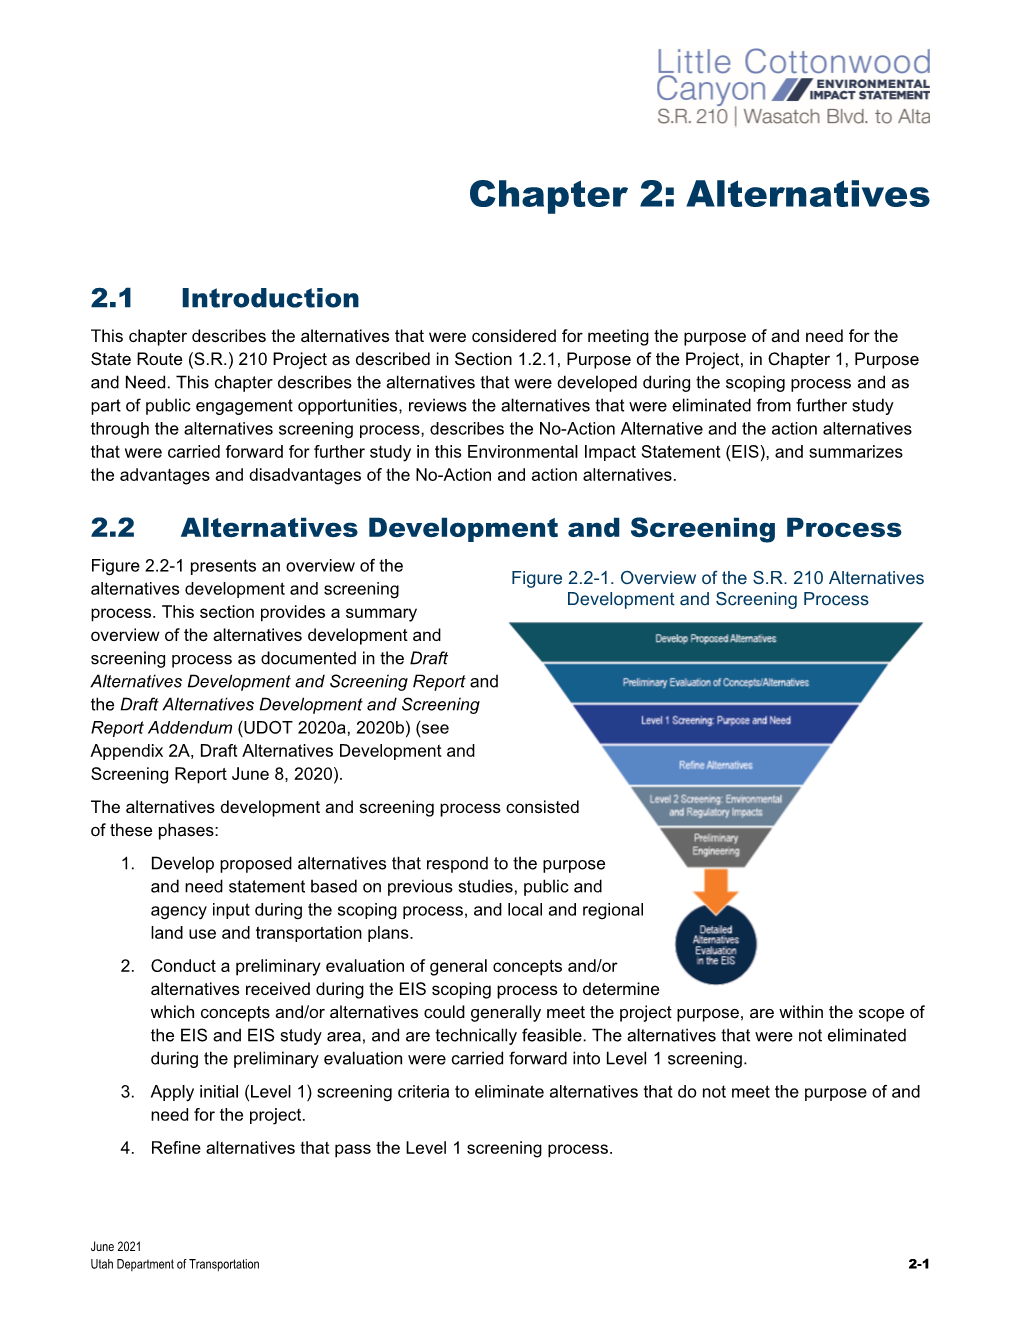 LCC DEIS Chapter 2 – Alternatives